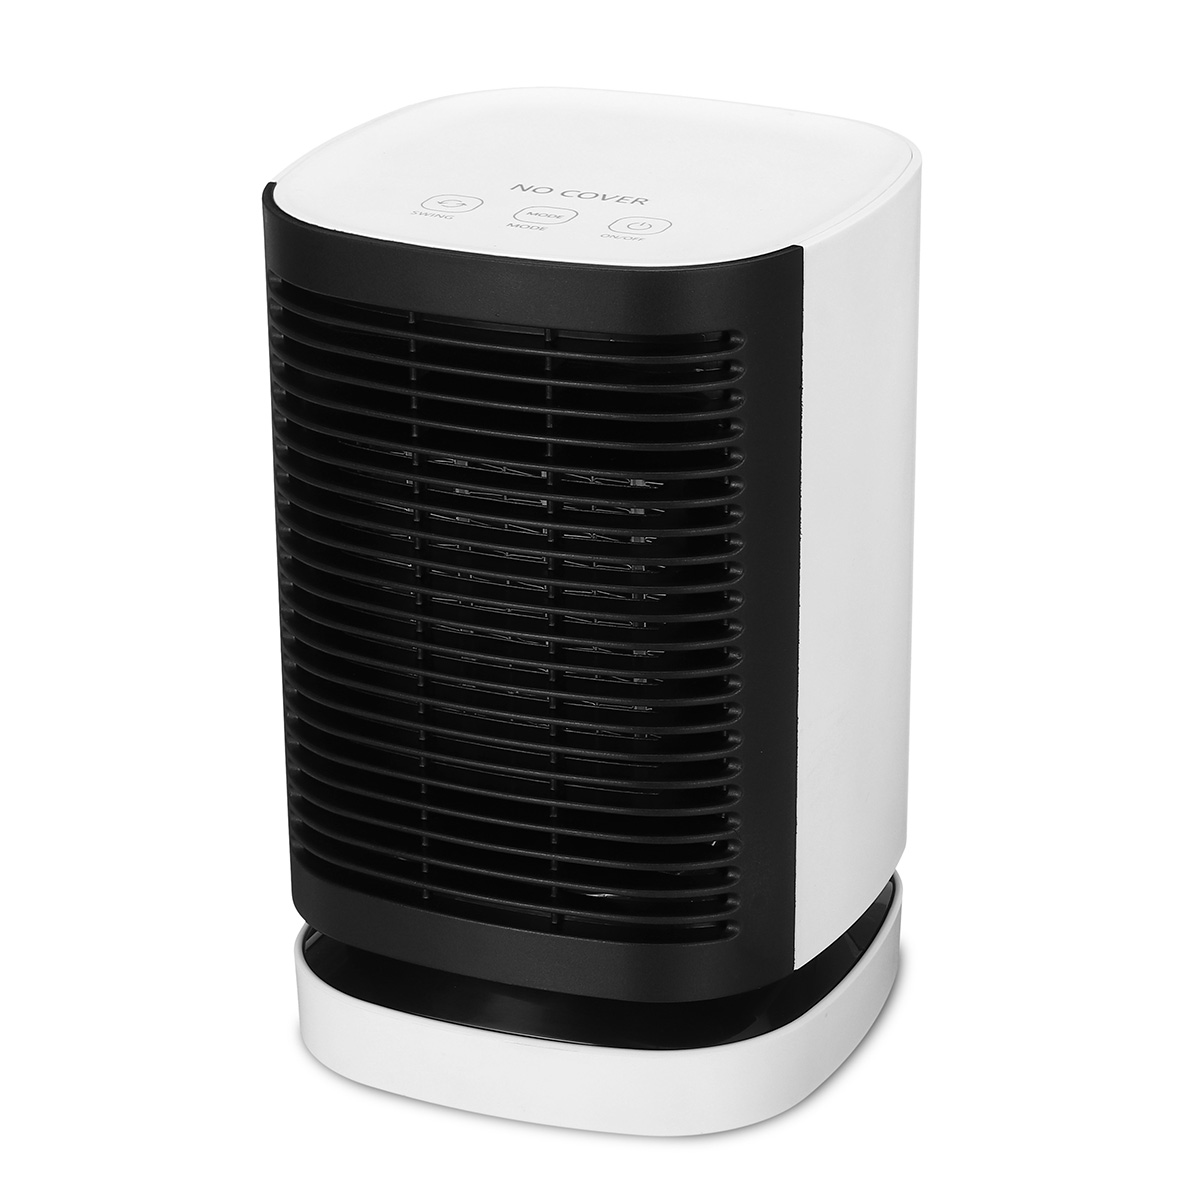 

Portable Travel 950W Electric Fan Heater Home Office Warm Air Blower Winter Warmer Heating Fan